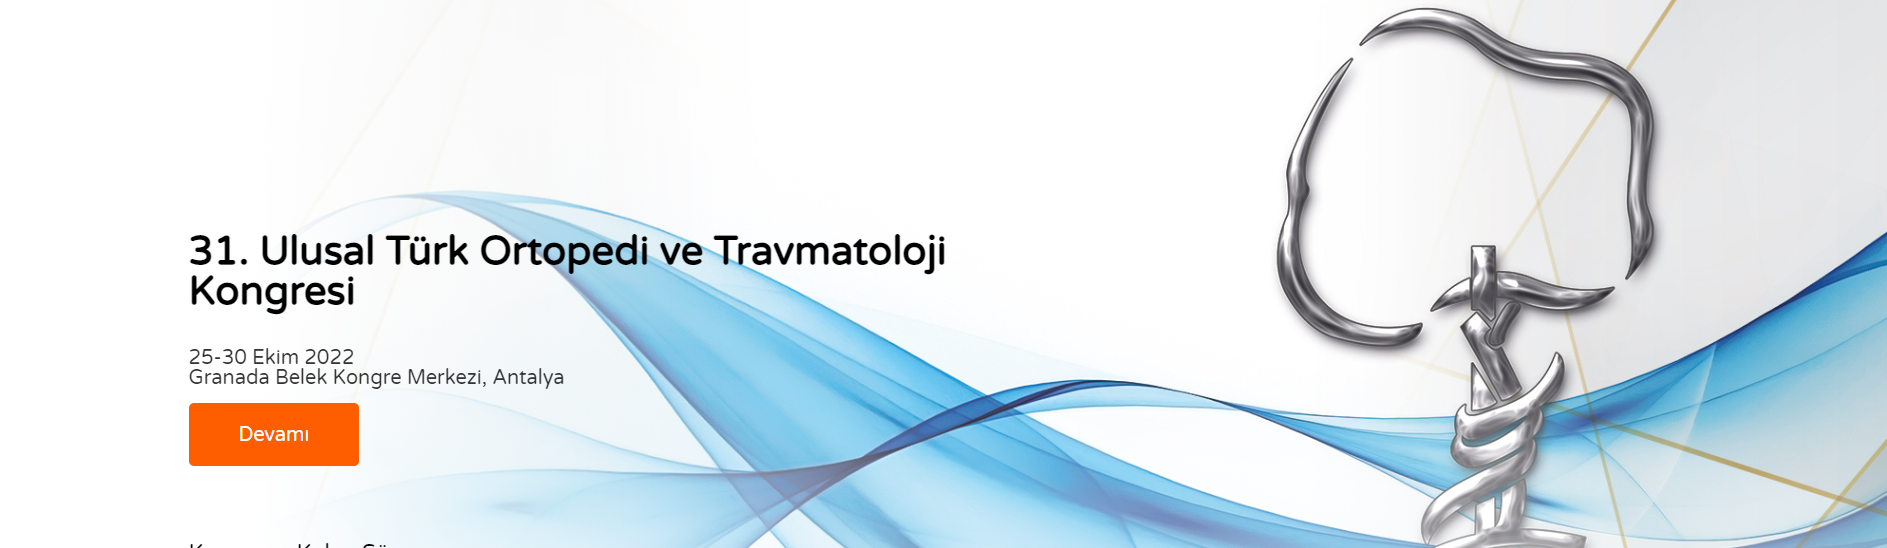 31. Ulusal Türk Ortopedi ve Travmatoloji Kongresi